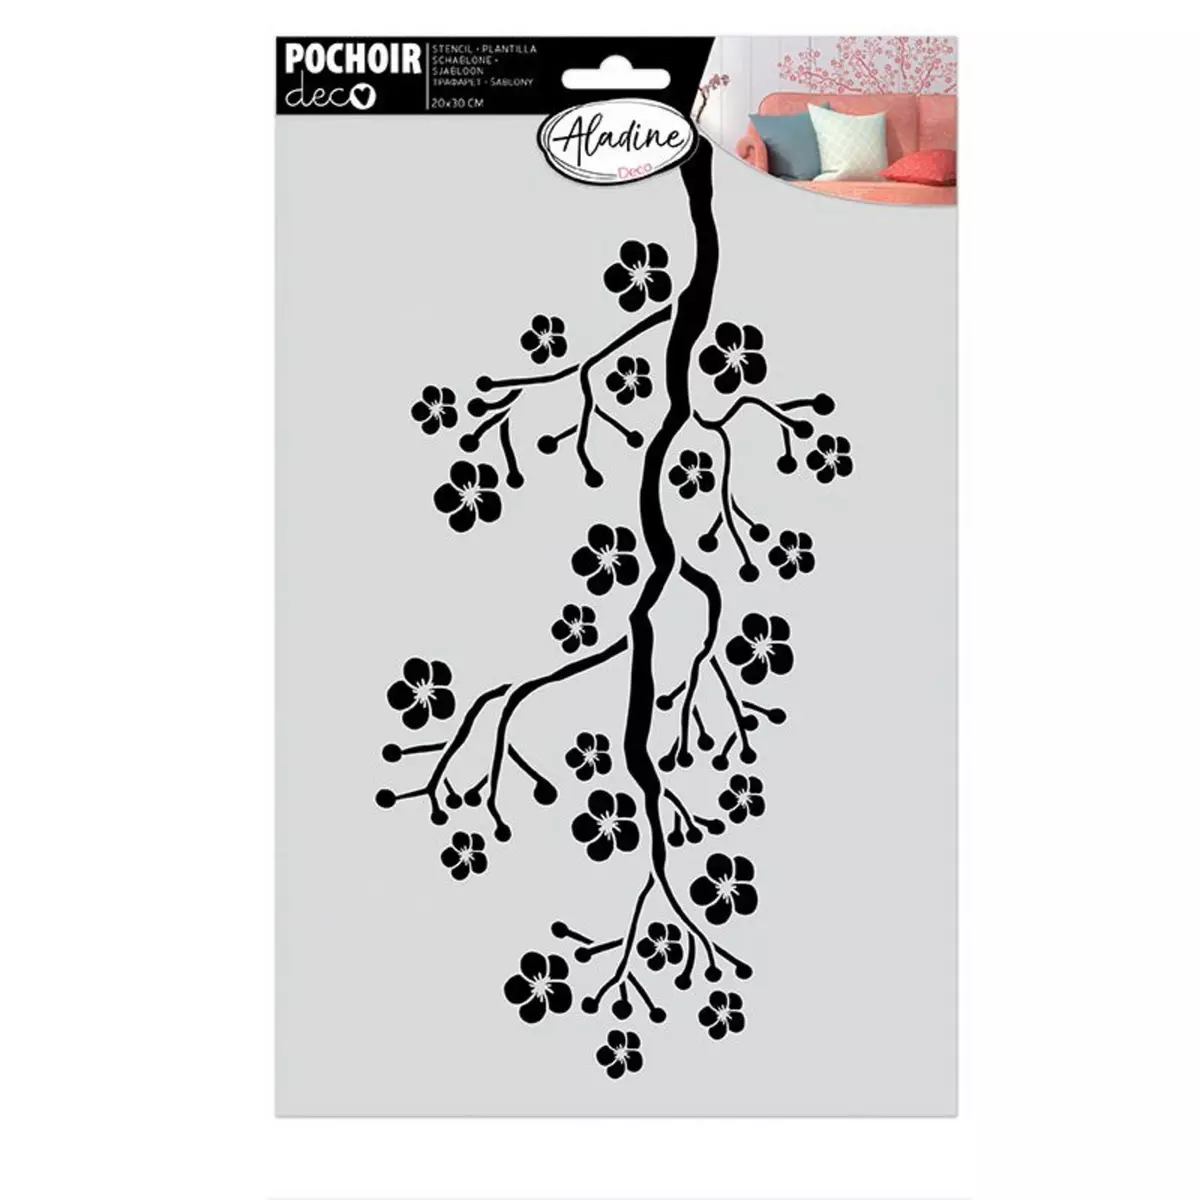 Aladine Pochoir de décoration - Branches sakura - 20 x 30 cm